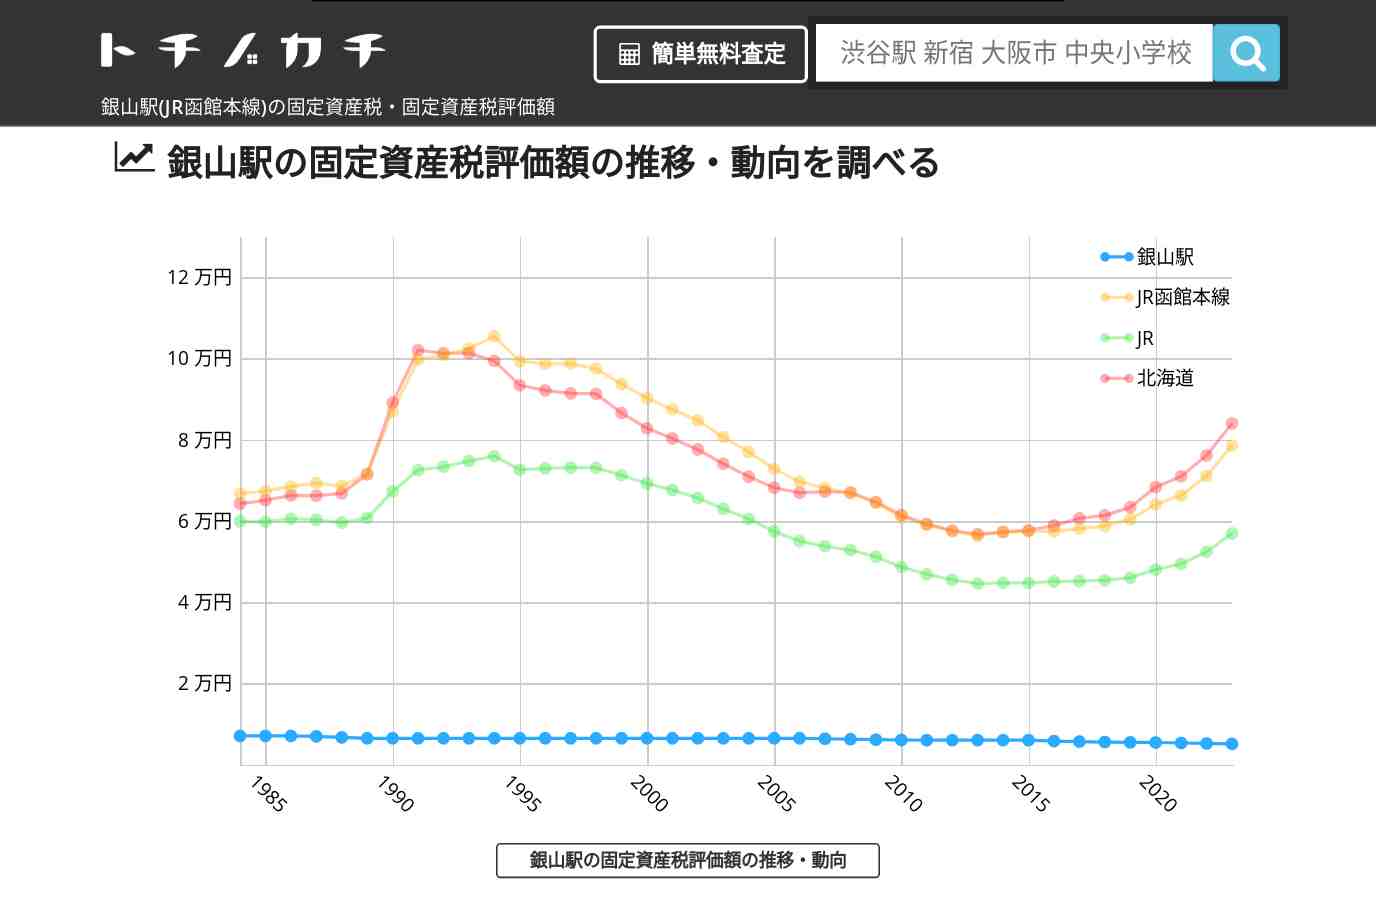 銀山駅(JR函館本線)の固定資産税・固定資産税評価額 | トチノカチ